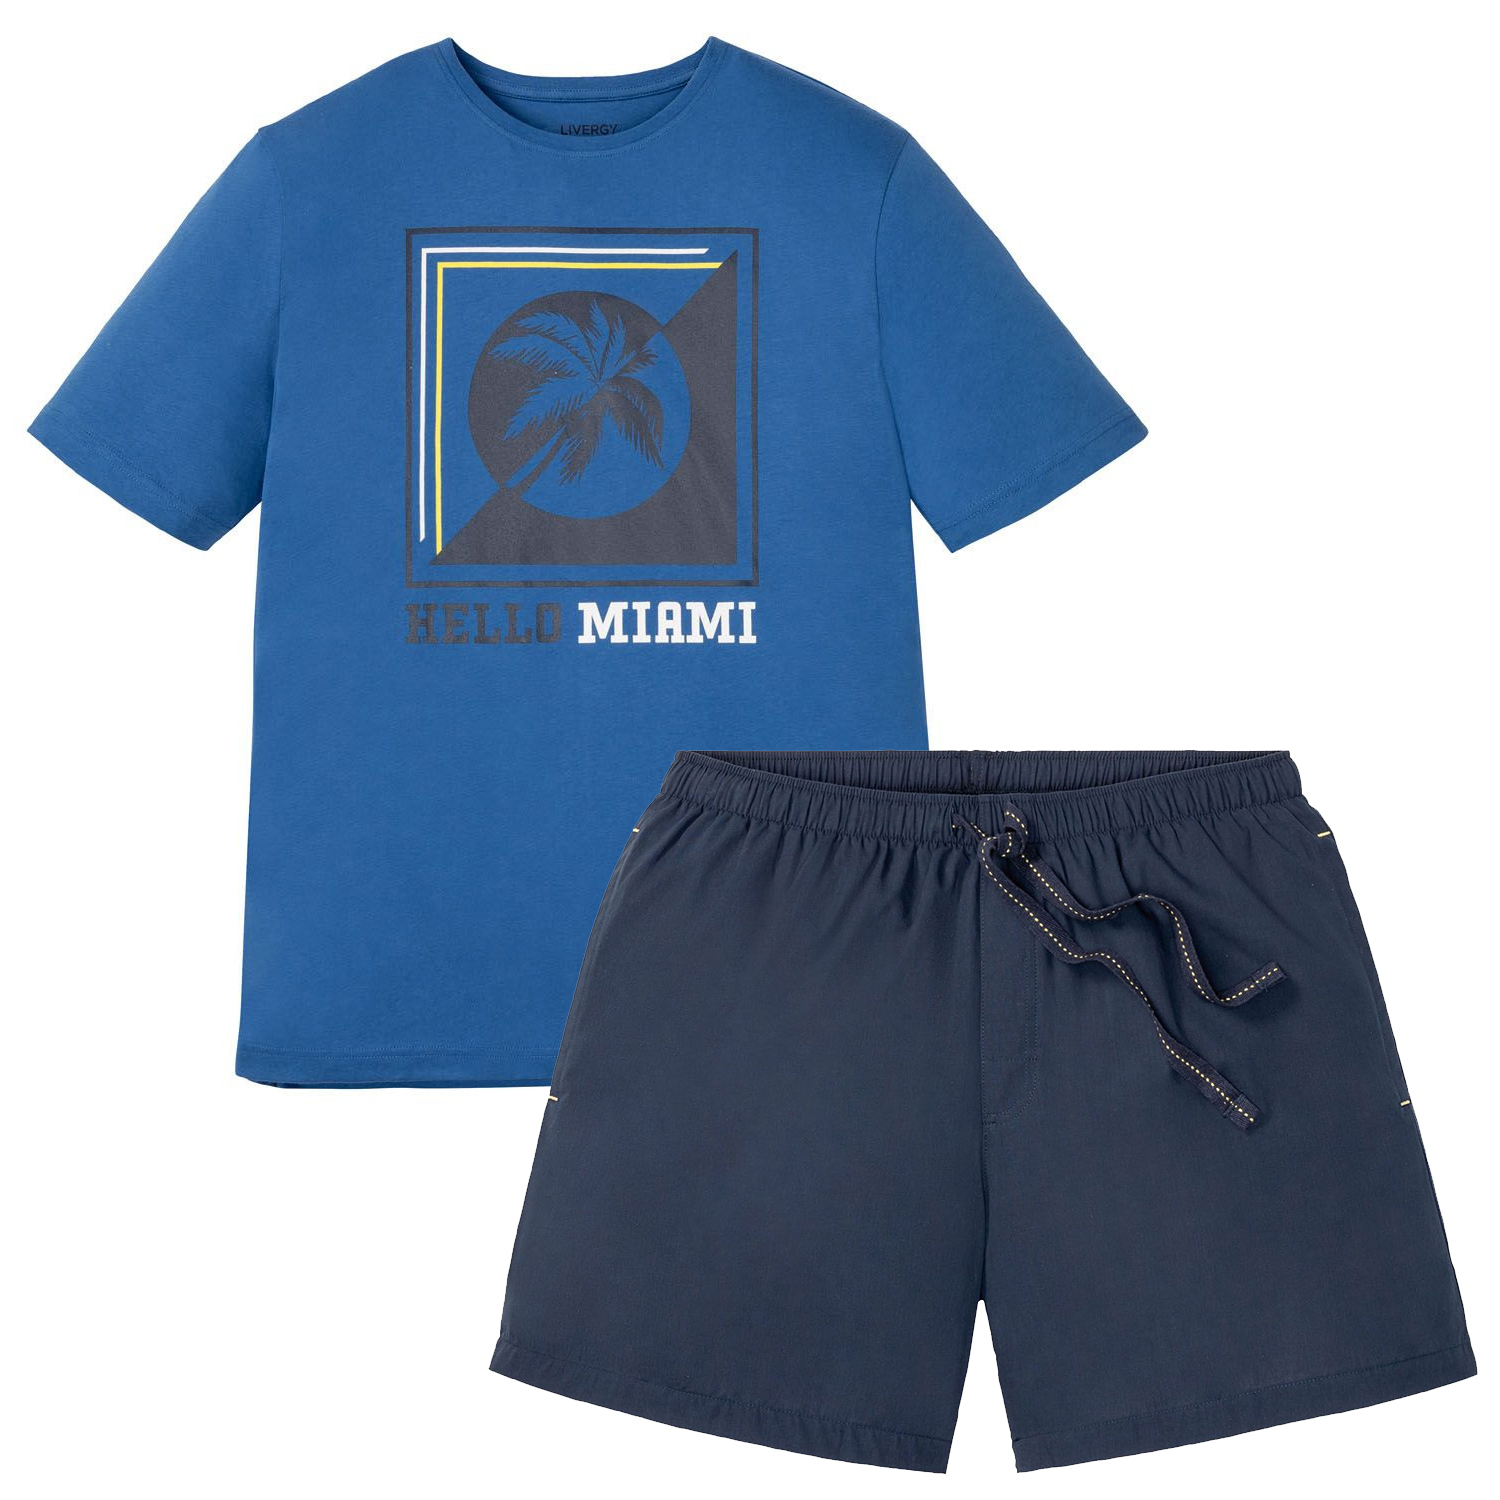 ست تی شرت و شلوارک مردانه لیورجی مدل دریم کد HelloMiami رنگ آبی